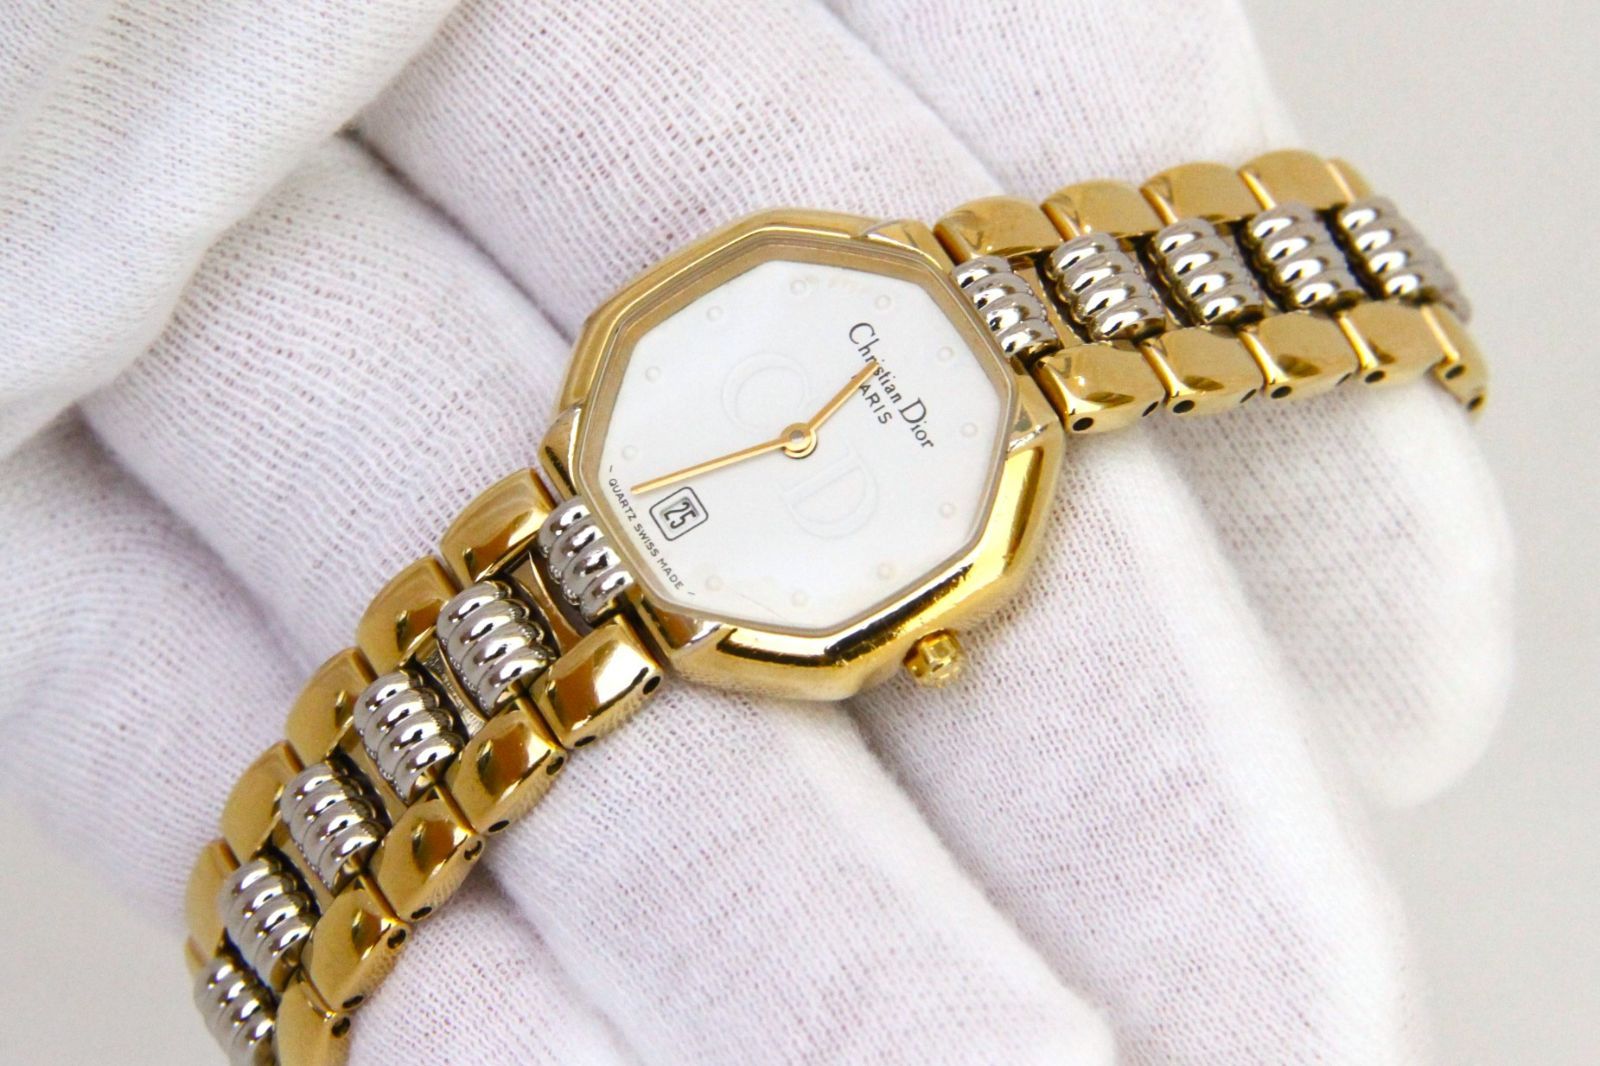 250時間ランニングテストクリスチャンディオール Christian Dior 女性用 腕時計 s1526